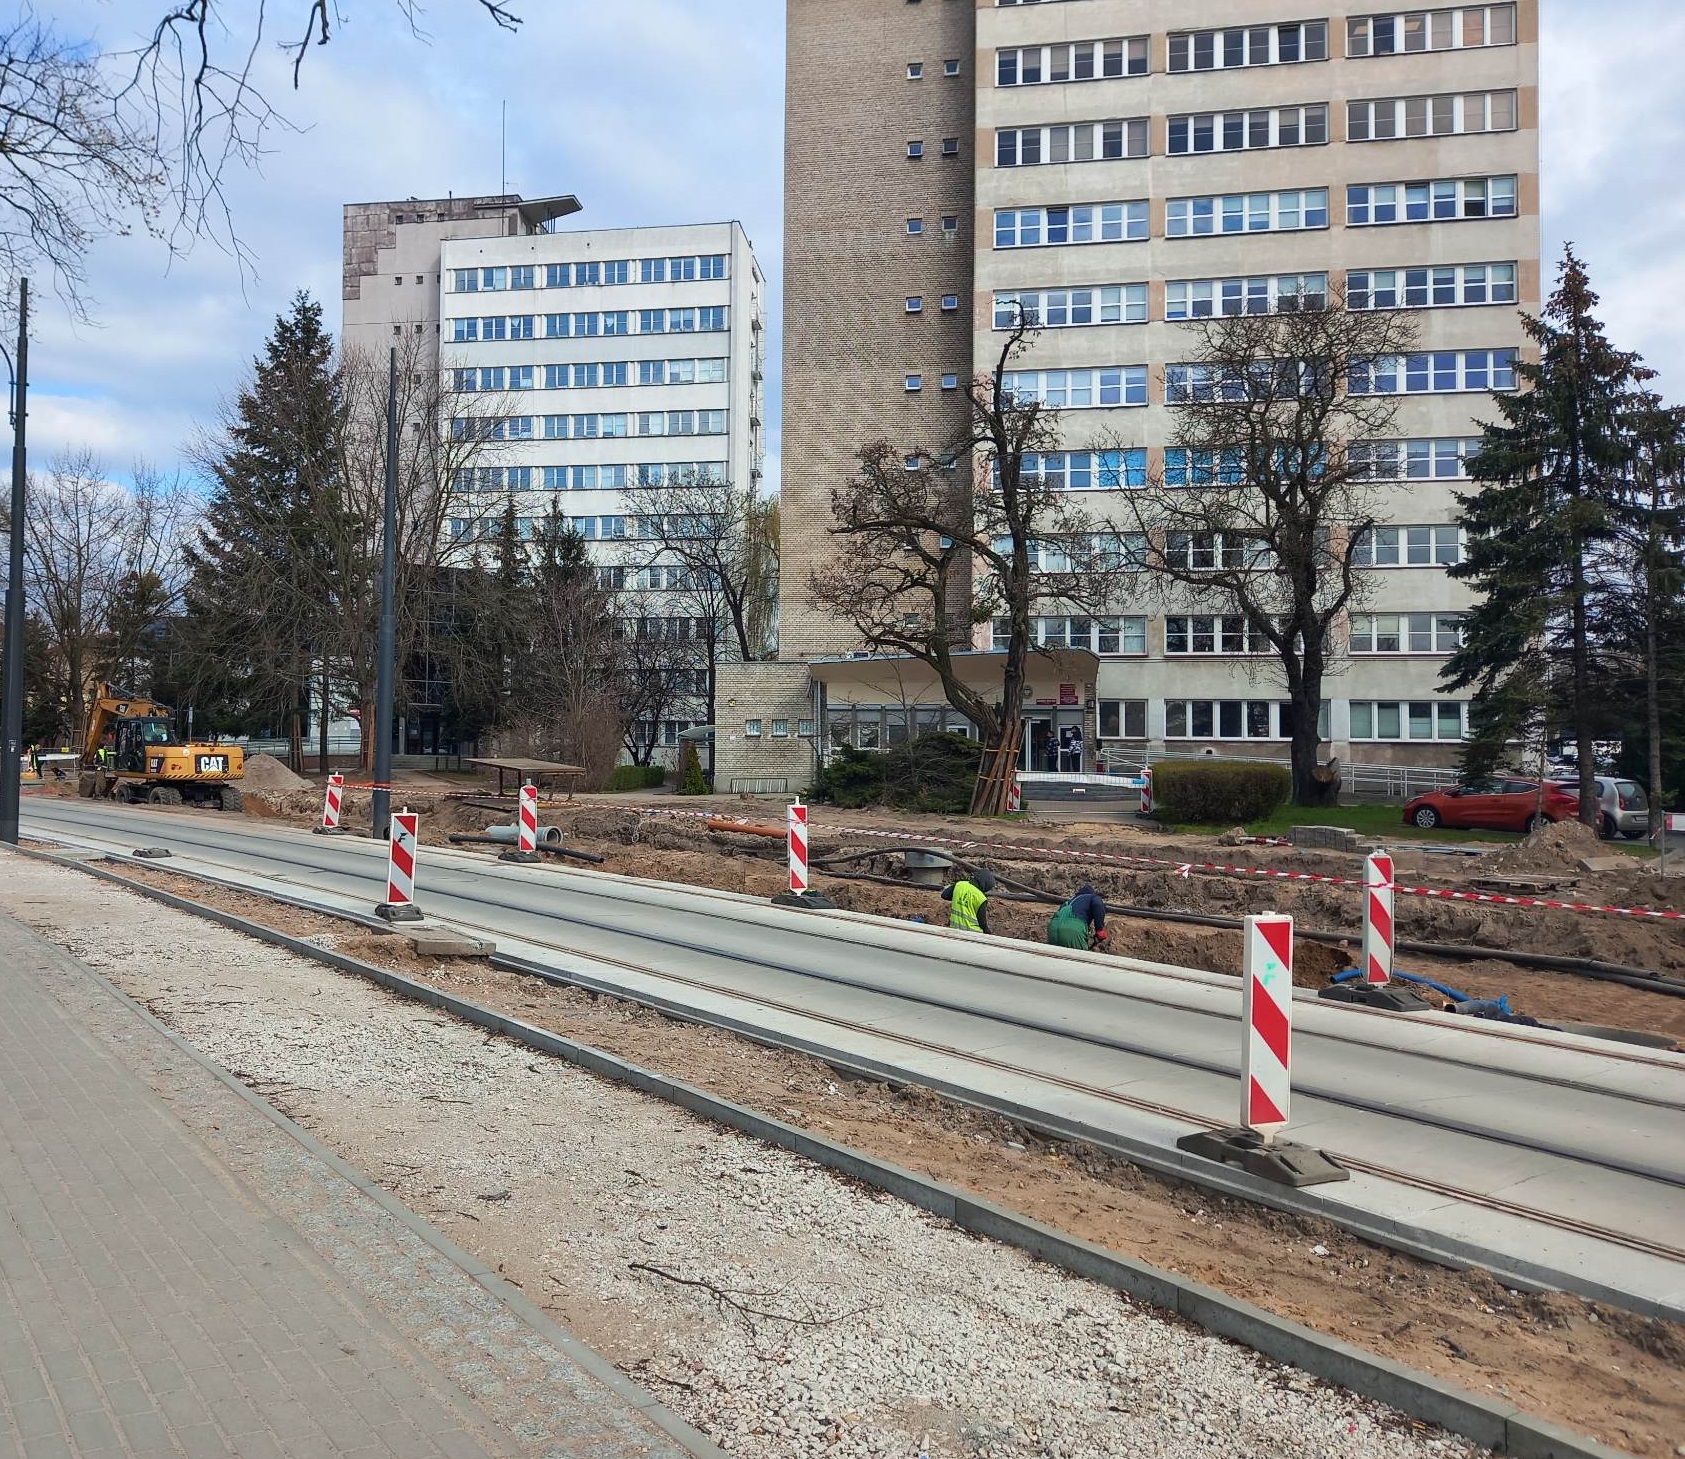 Trwa budowa nowej linii tramwajowej w Toruniu. Czekają nas zmiany na skrzyżowaniu.